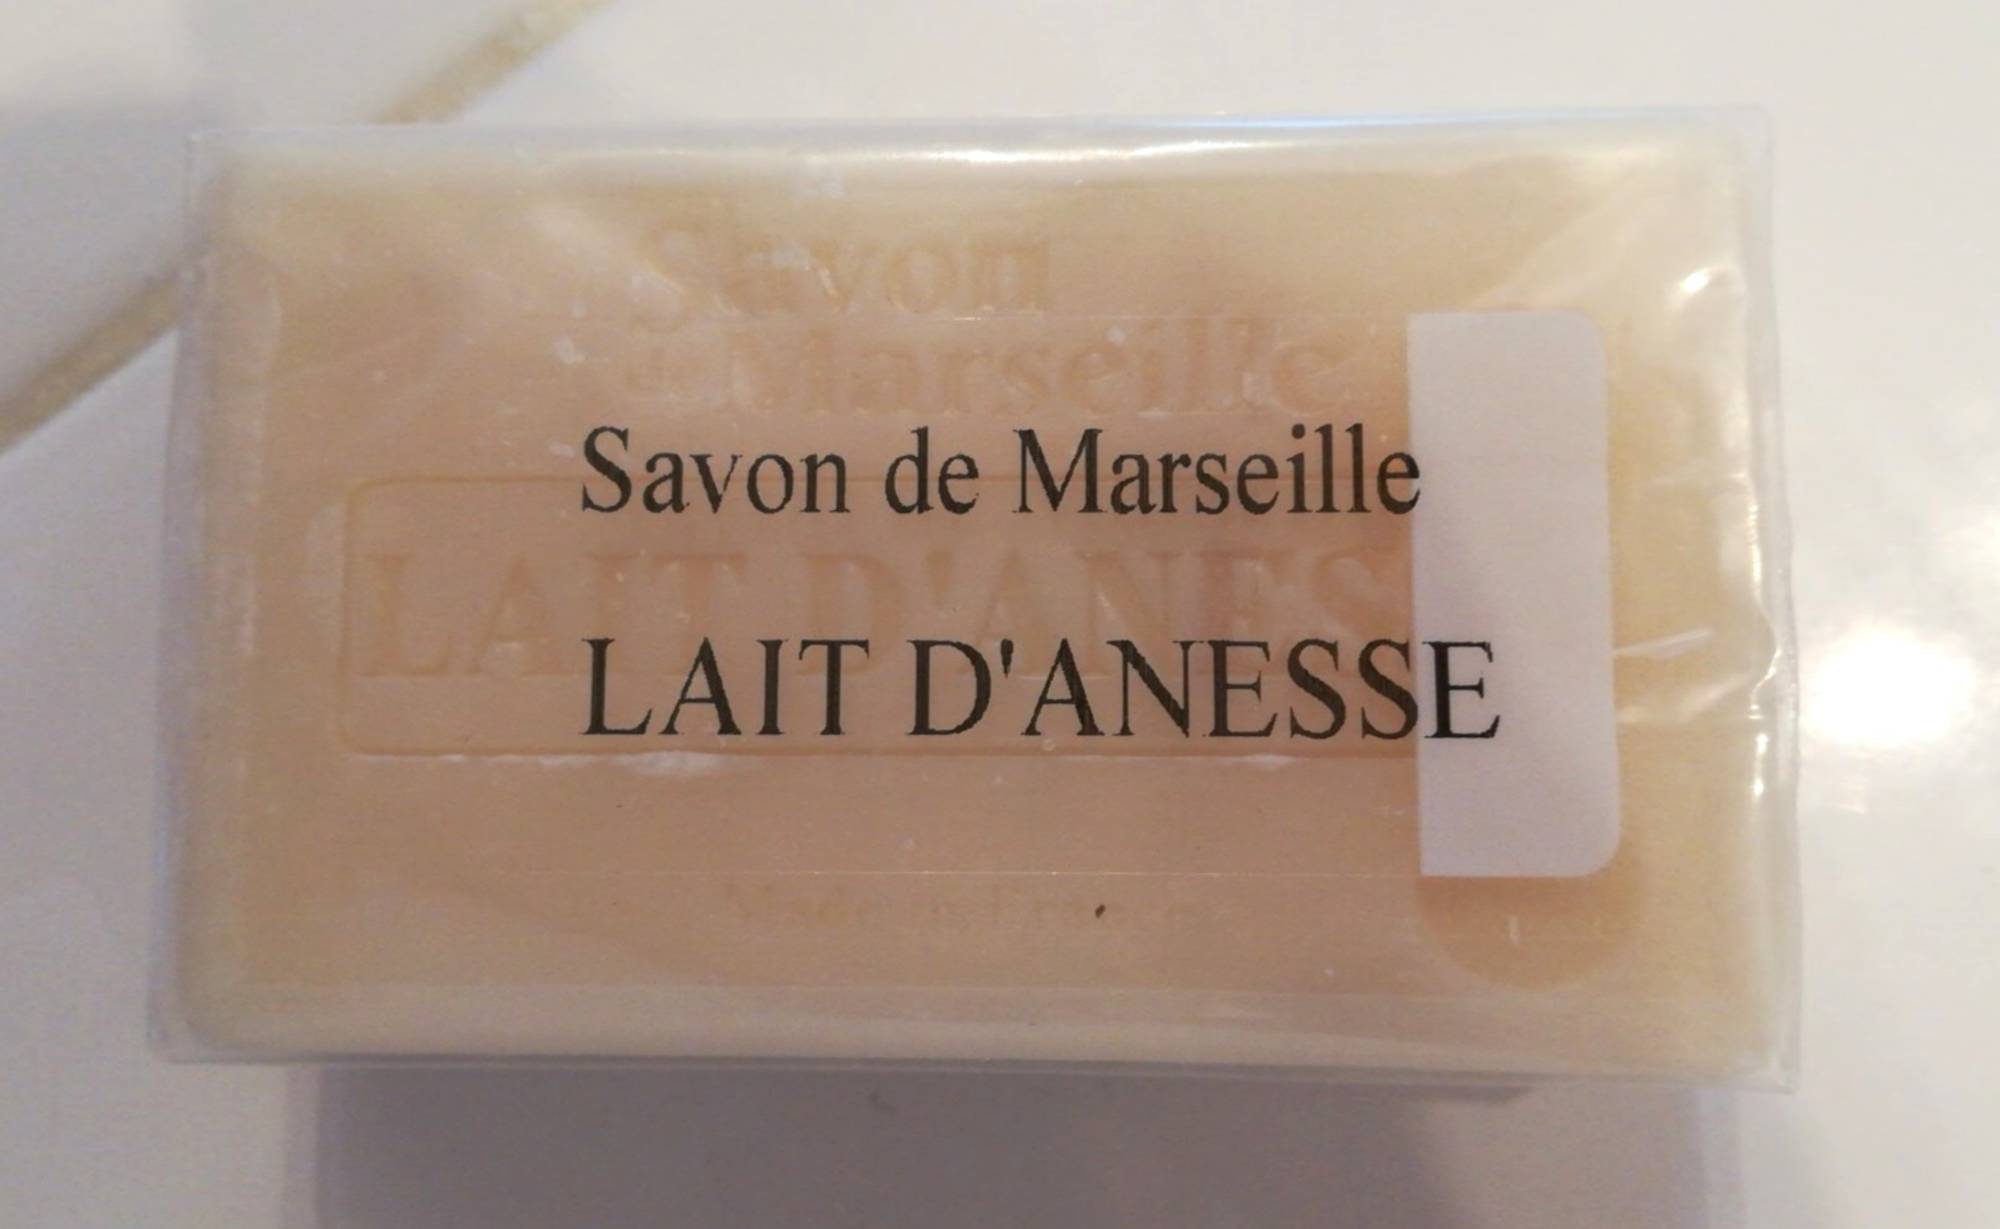 SAVON DE MARSEILLE - Savon au lait d'ânesse